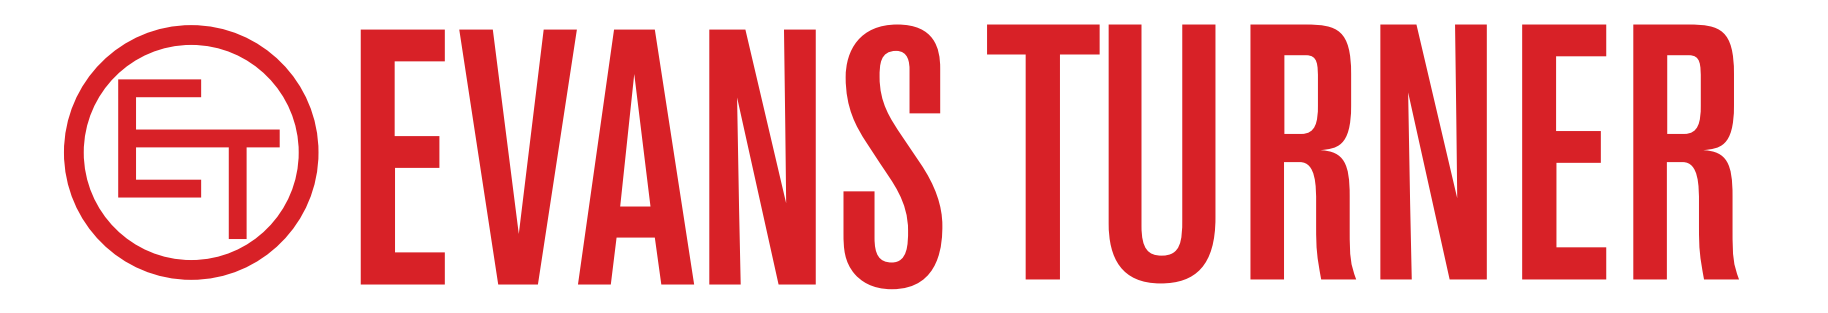 Evans Turner Header Logo